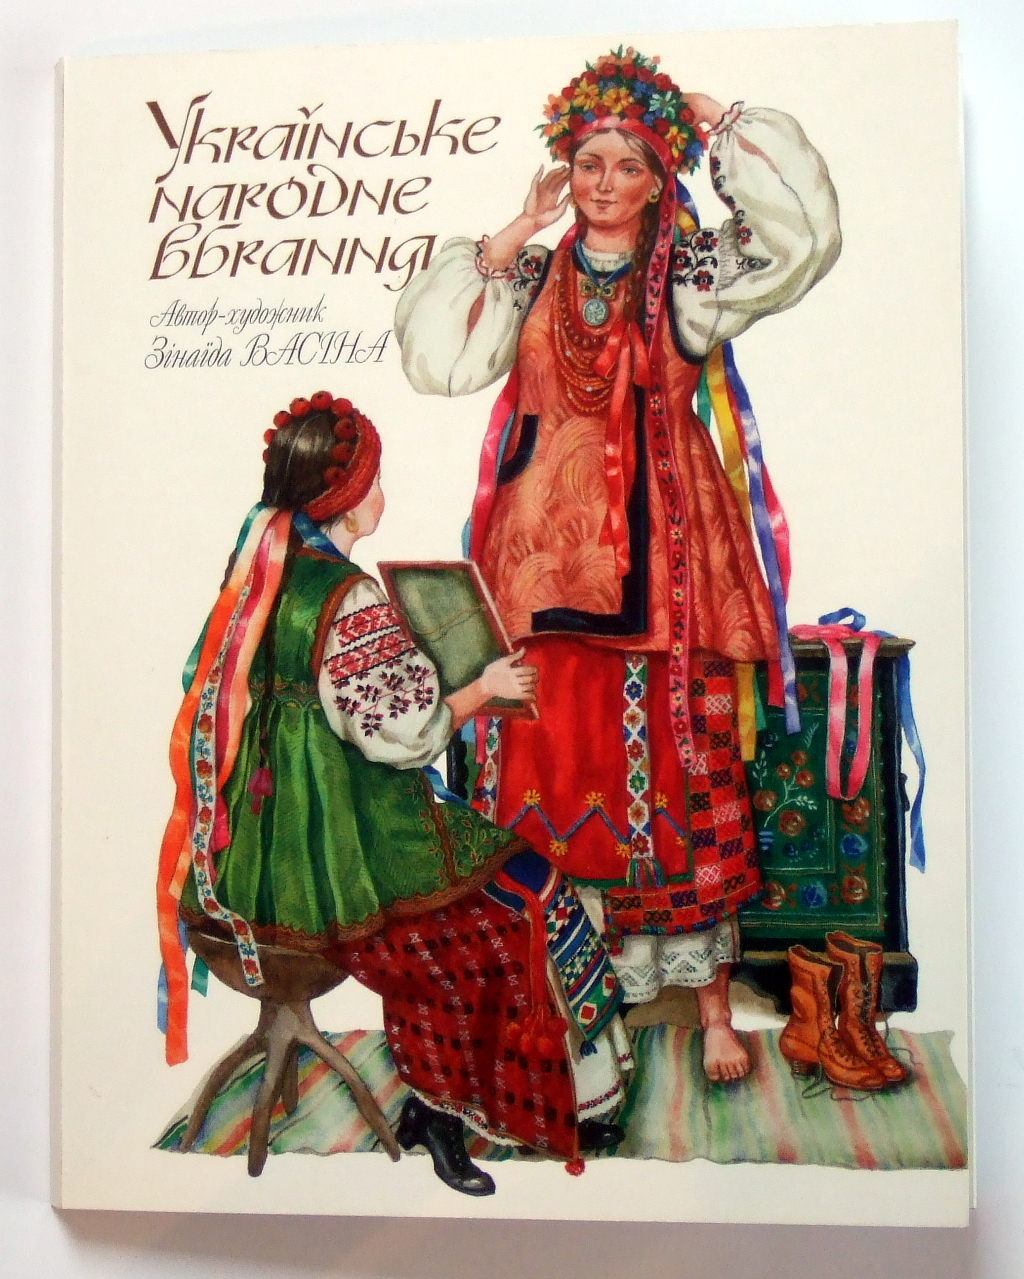 Друк листівок «Українське народне вбрання». Поліграфія друкарні Макрос, виготовлення рекламних листівок, специфікація 958991-1